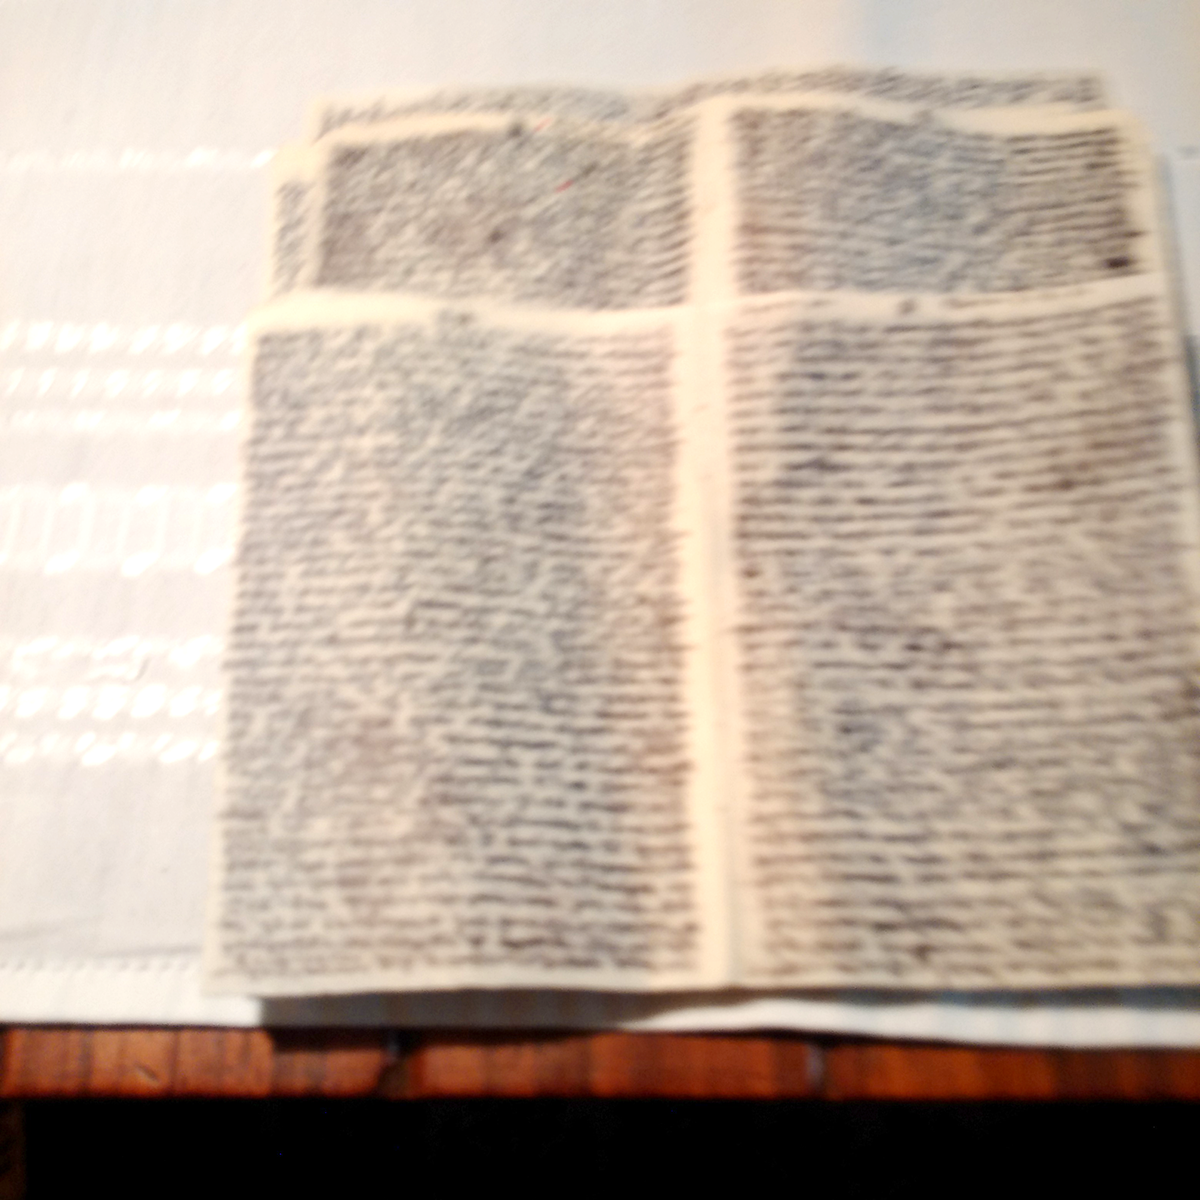 5. Κρυφό, πολυσέλιδο, ιδιωτικό γράμμα σε σχήμα βιβλίου, κατασκευασμένο από χαρτί ιχνογραφίας[...]